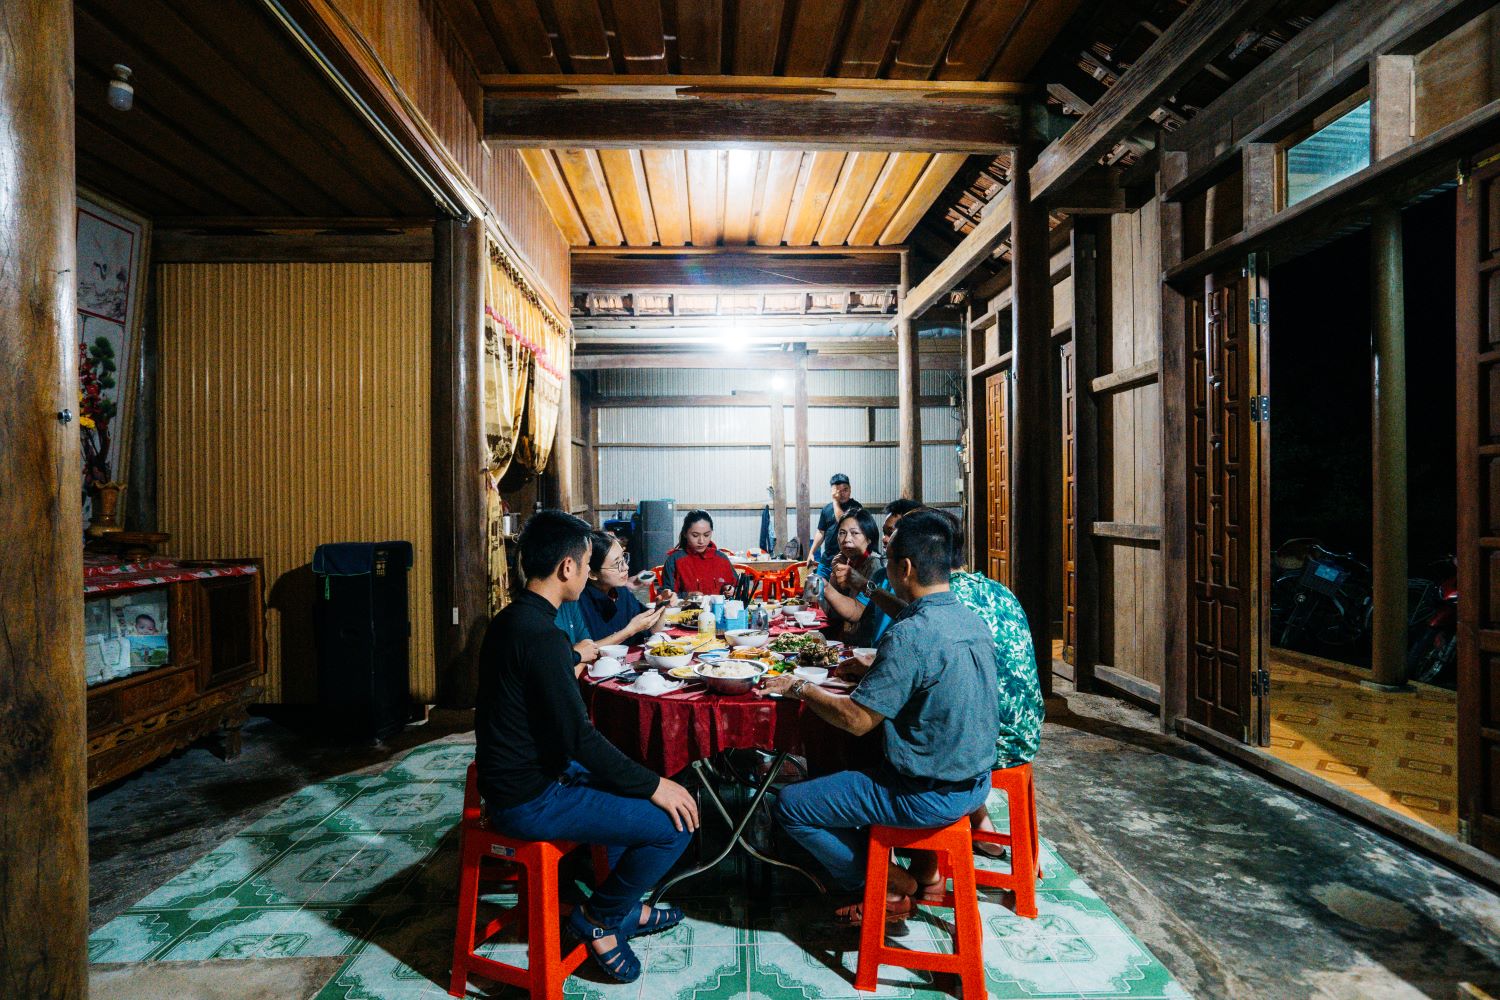 Bữa tối dân dã tại nhà dân với nhiều món ăn ngon miệng.